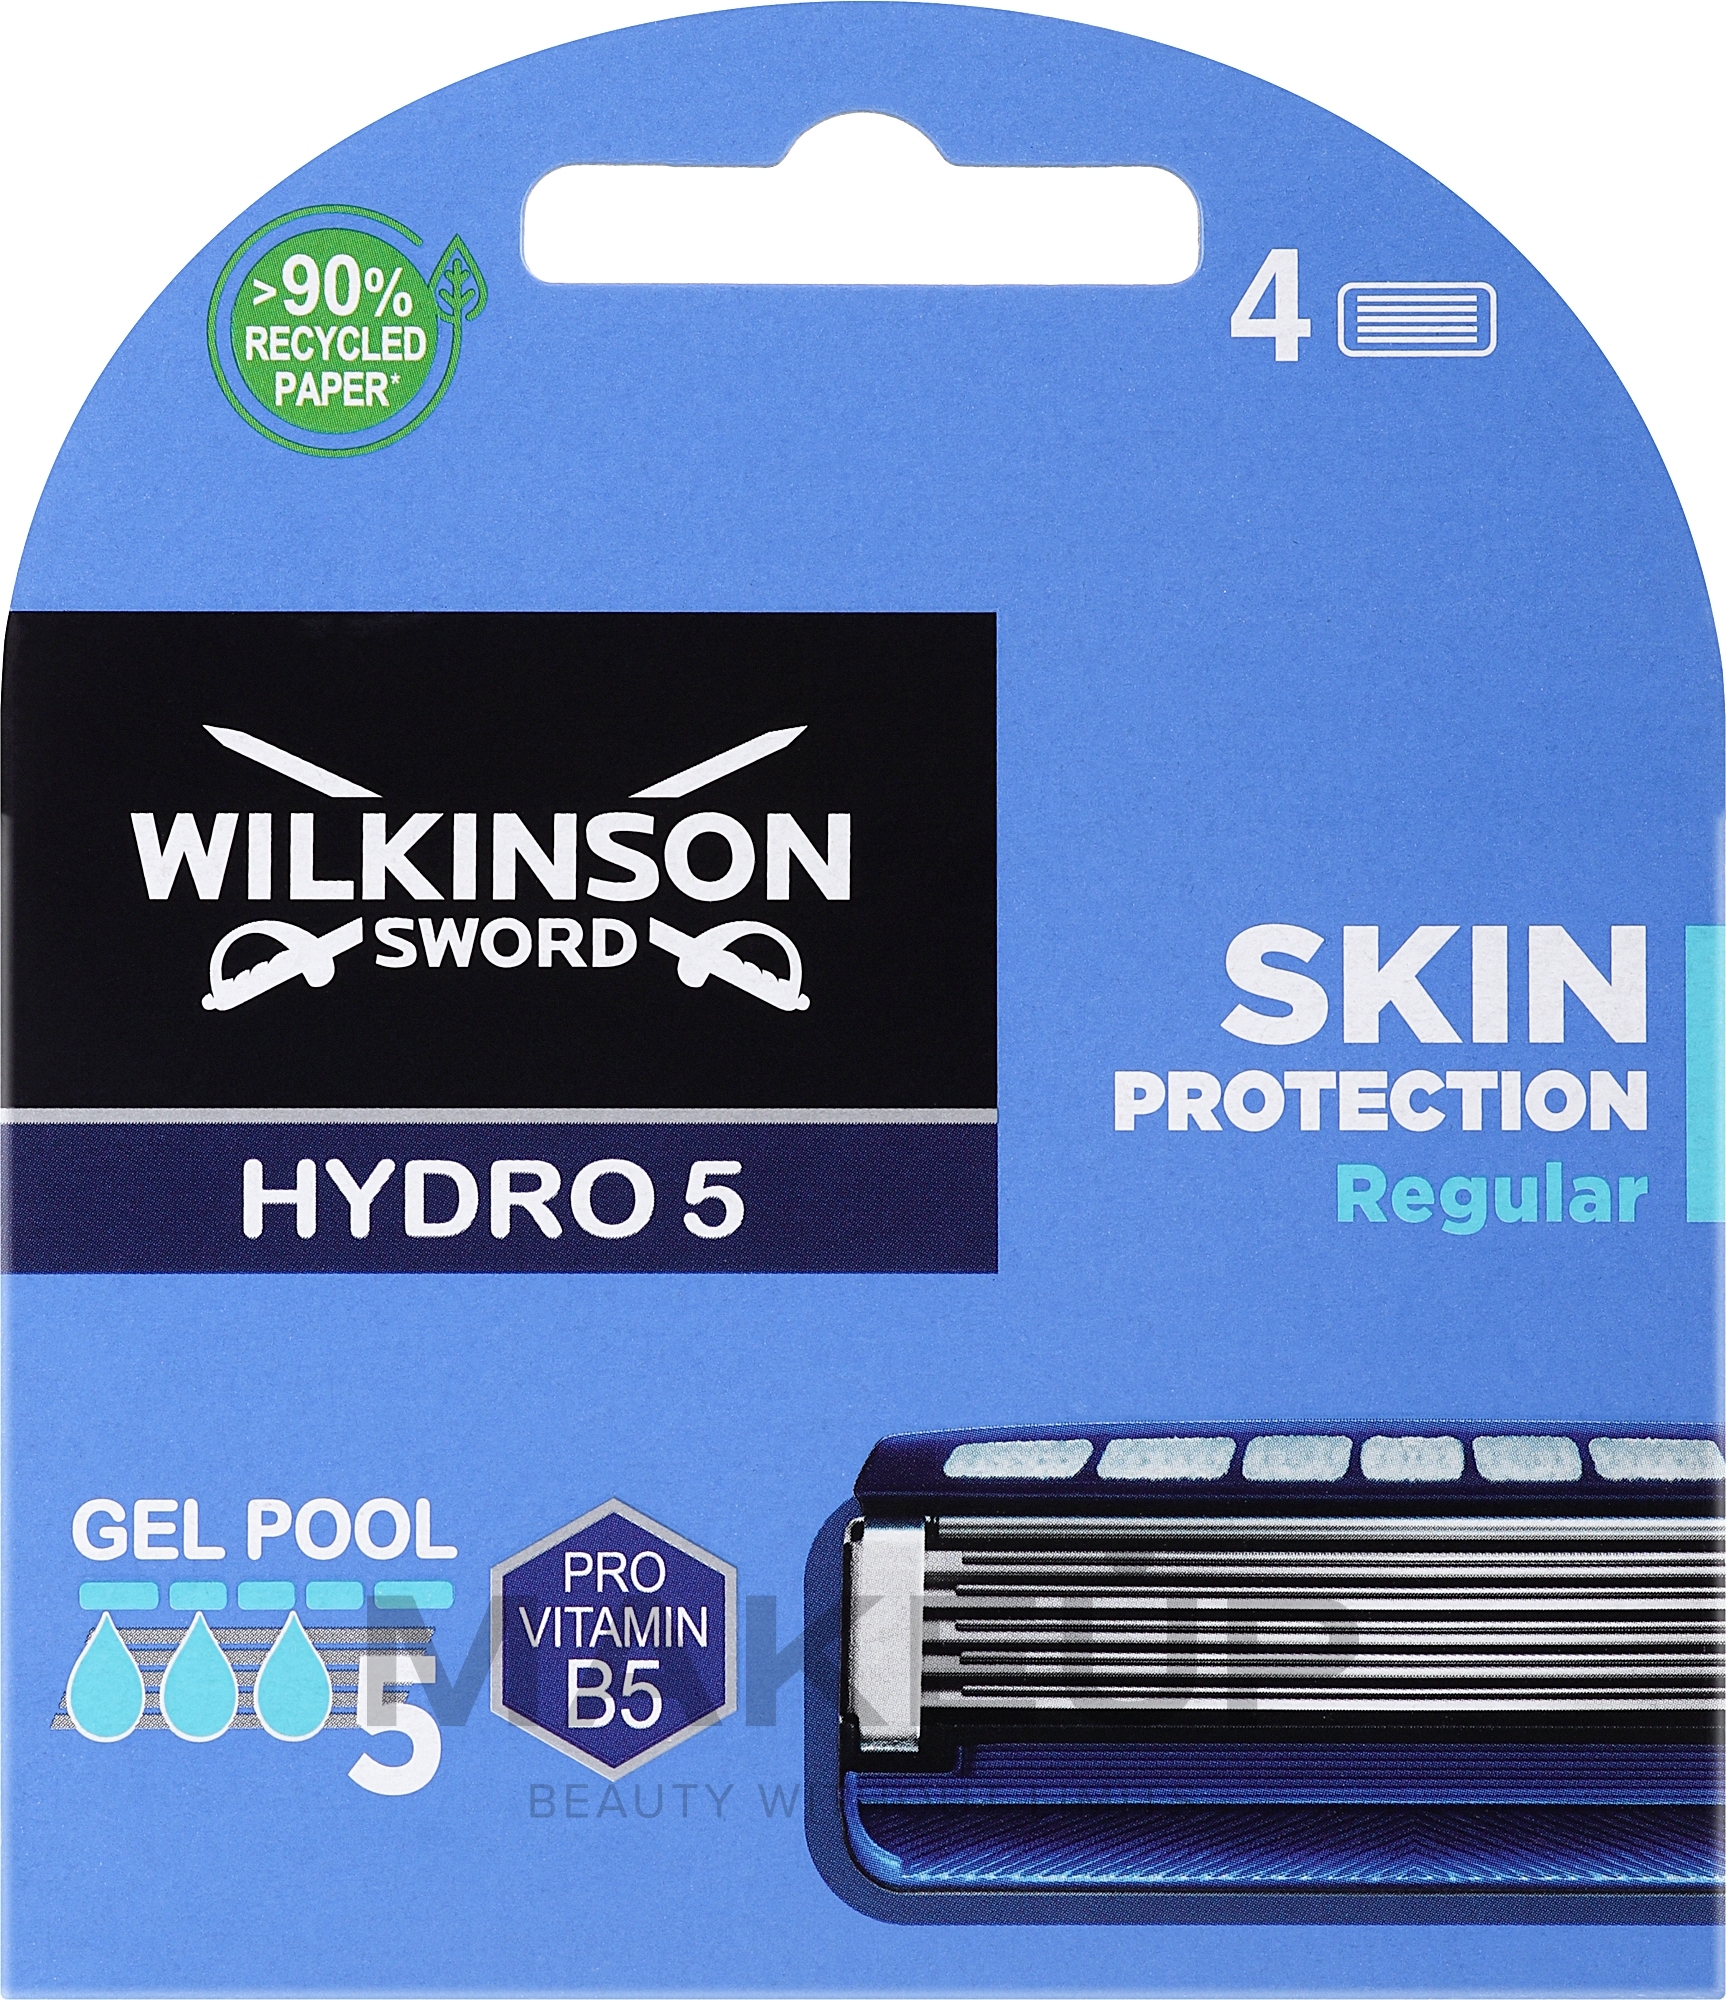 Wymienne wkłady do maszynki do golenia, 4 szt. - Wilkinson Sword Hydro 5 Regular — Zdjęcie 4 szt.